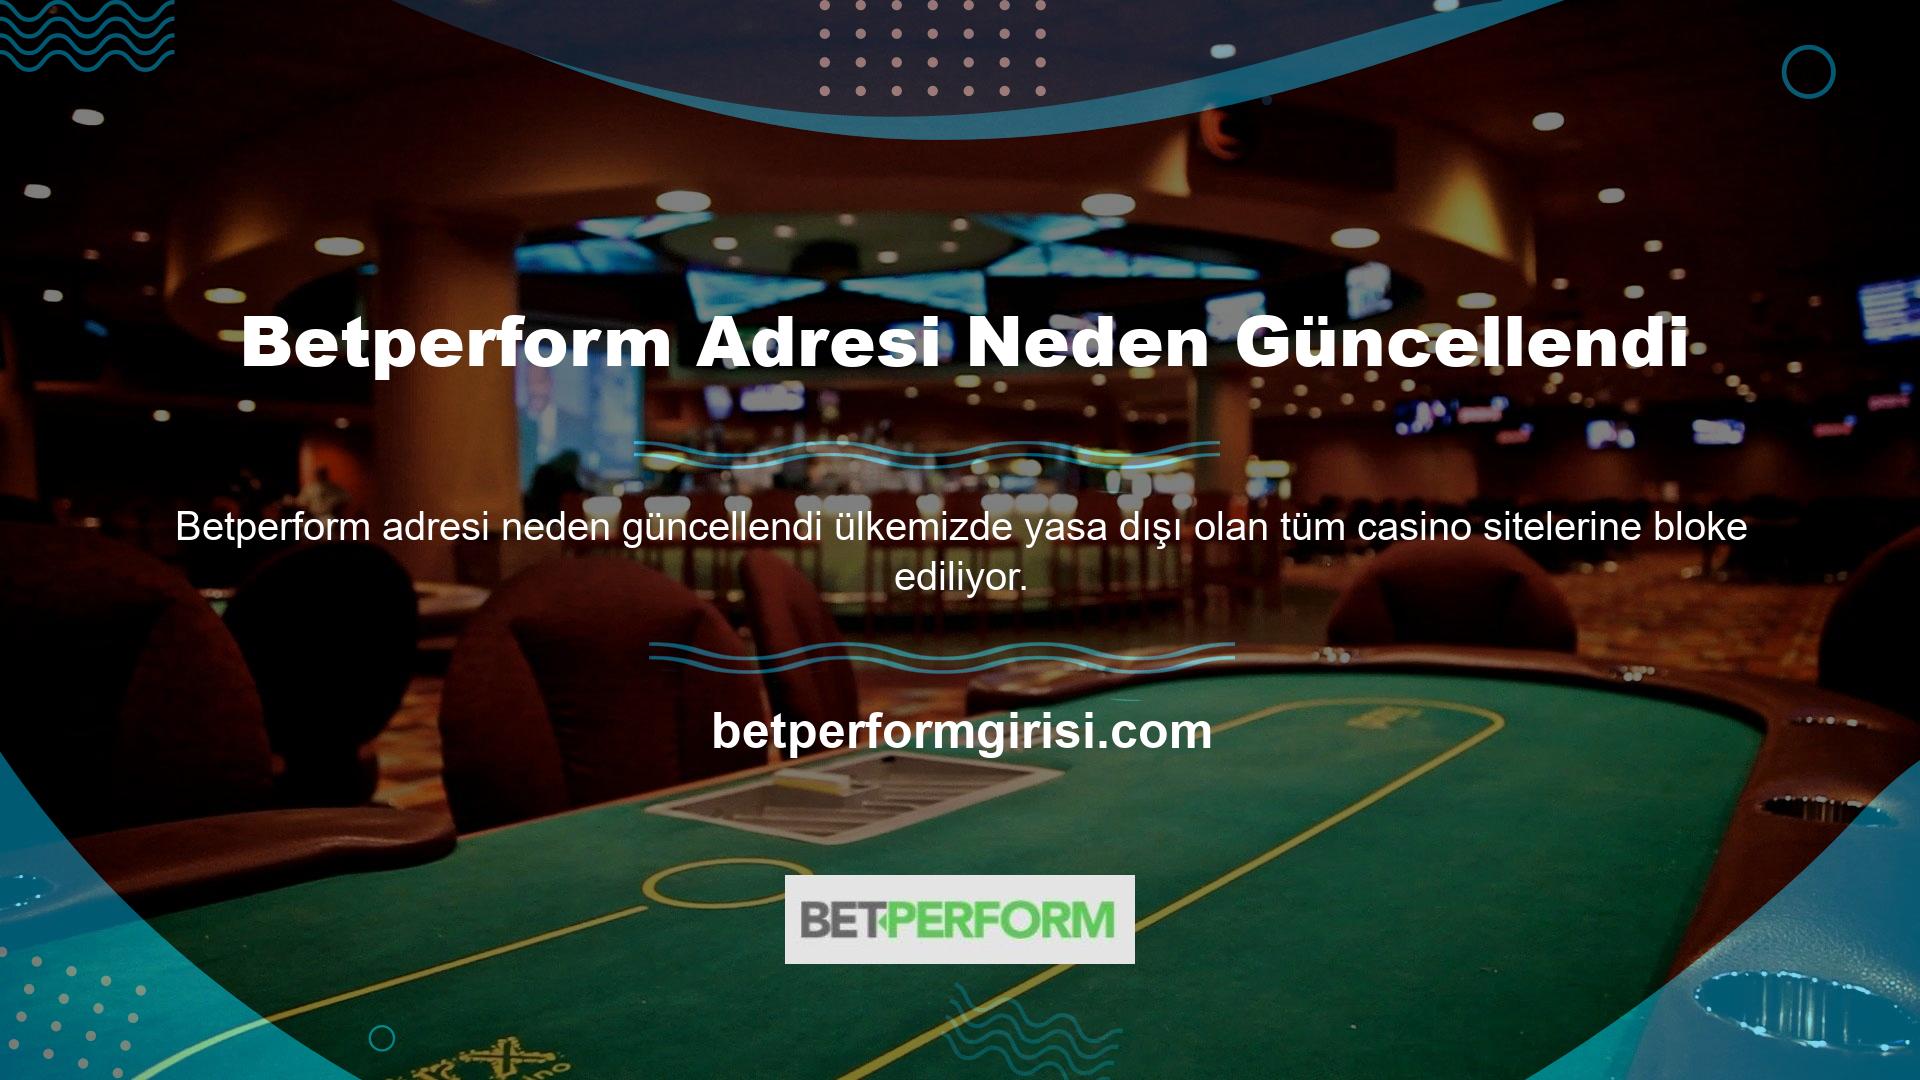 İnternet casino siteleri ülkemizde yasa dışıdır veya yasa dışı kabul edilmektedir